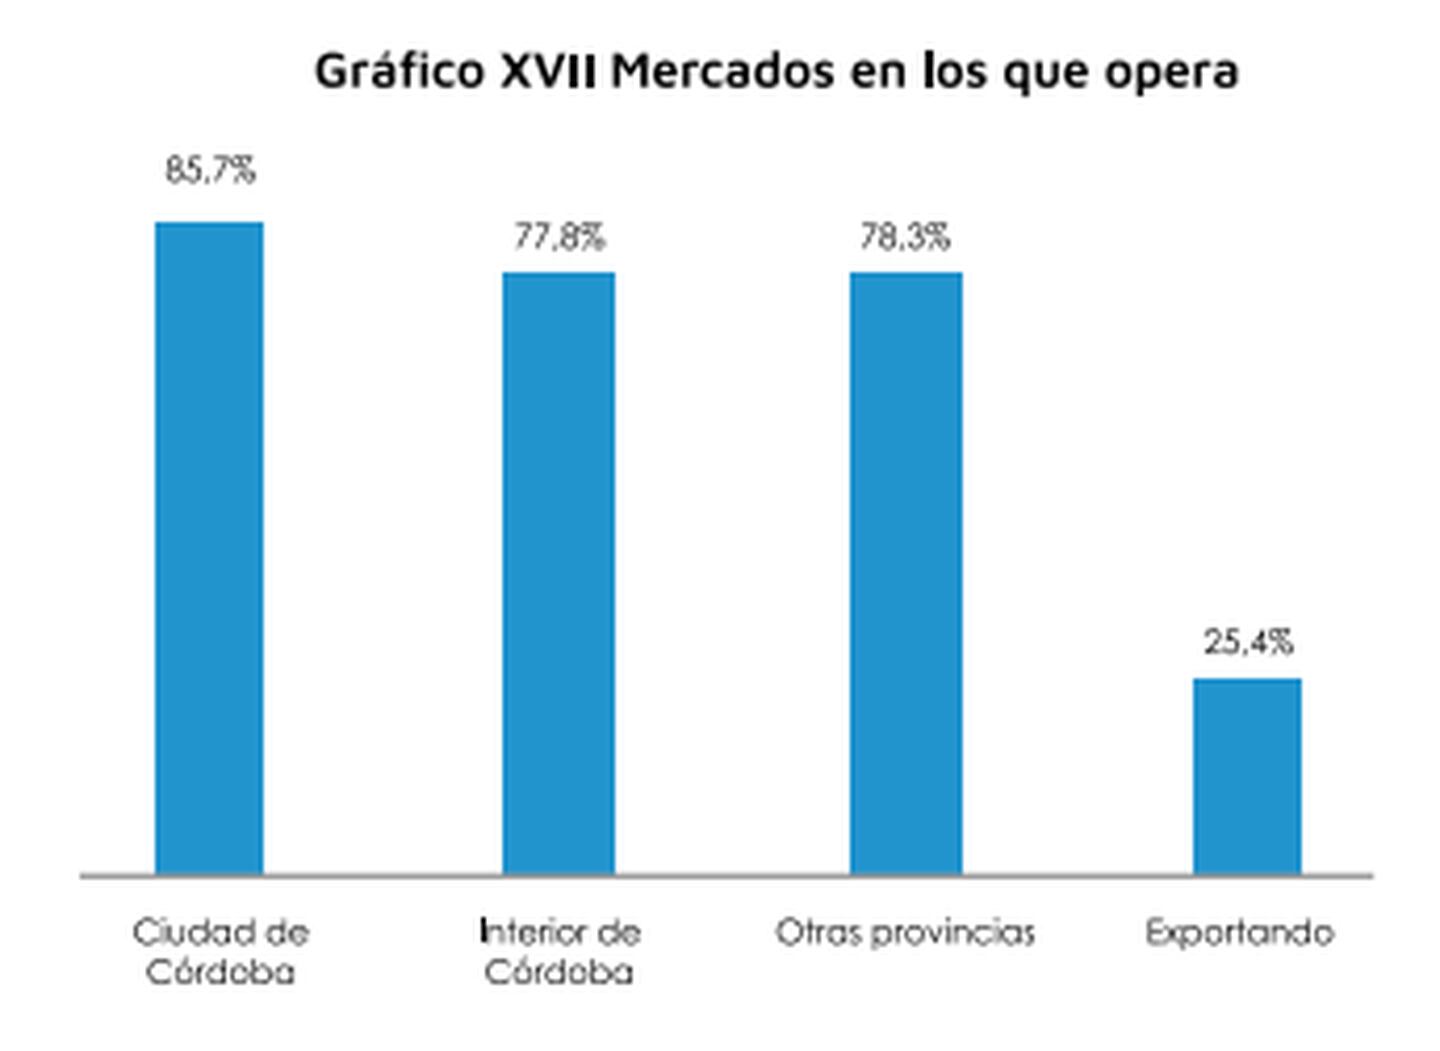 El 25,4% exporta sus serviciosdfd